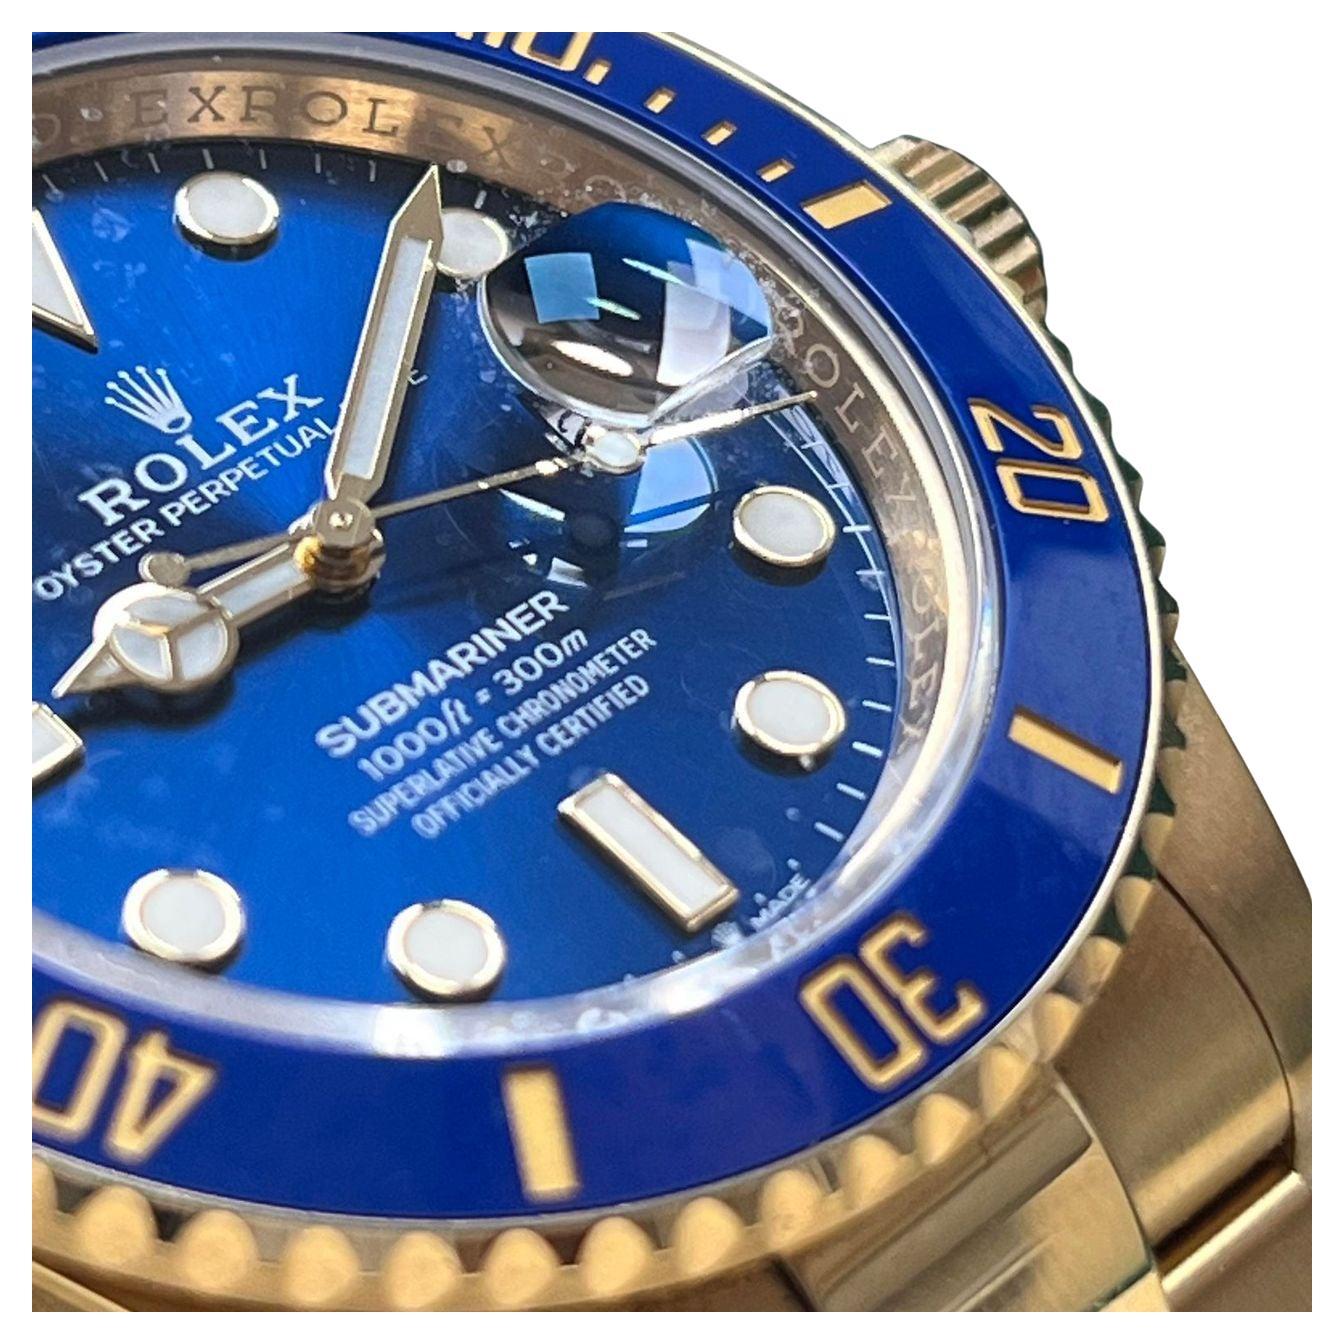 Voici la Rolex Gold Submariner 126618LB Blue, un summum de luxe et de savoir-faire.

Ce garde-temps exquis présente un superbe design tout en or, rayonnant d'élégance et de raffinement. Le cadran bleu vibrant ajoute une touche de sophistication,